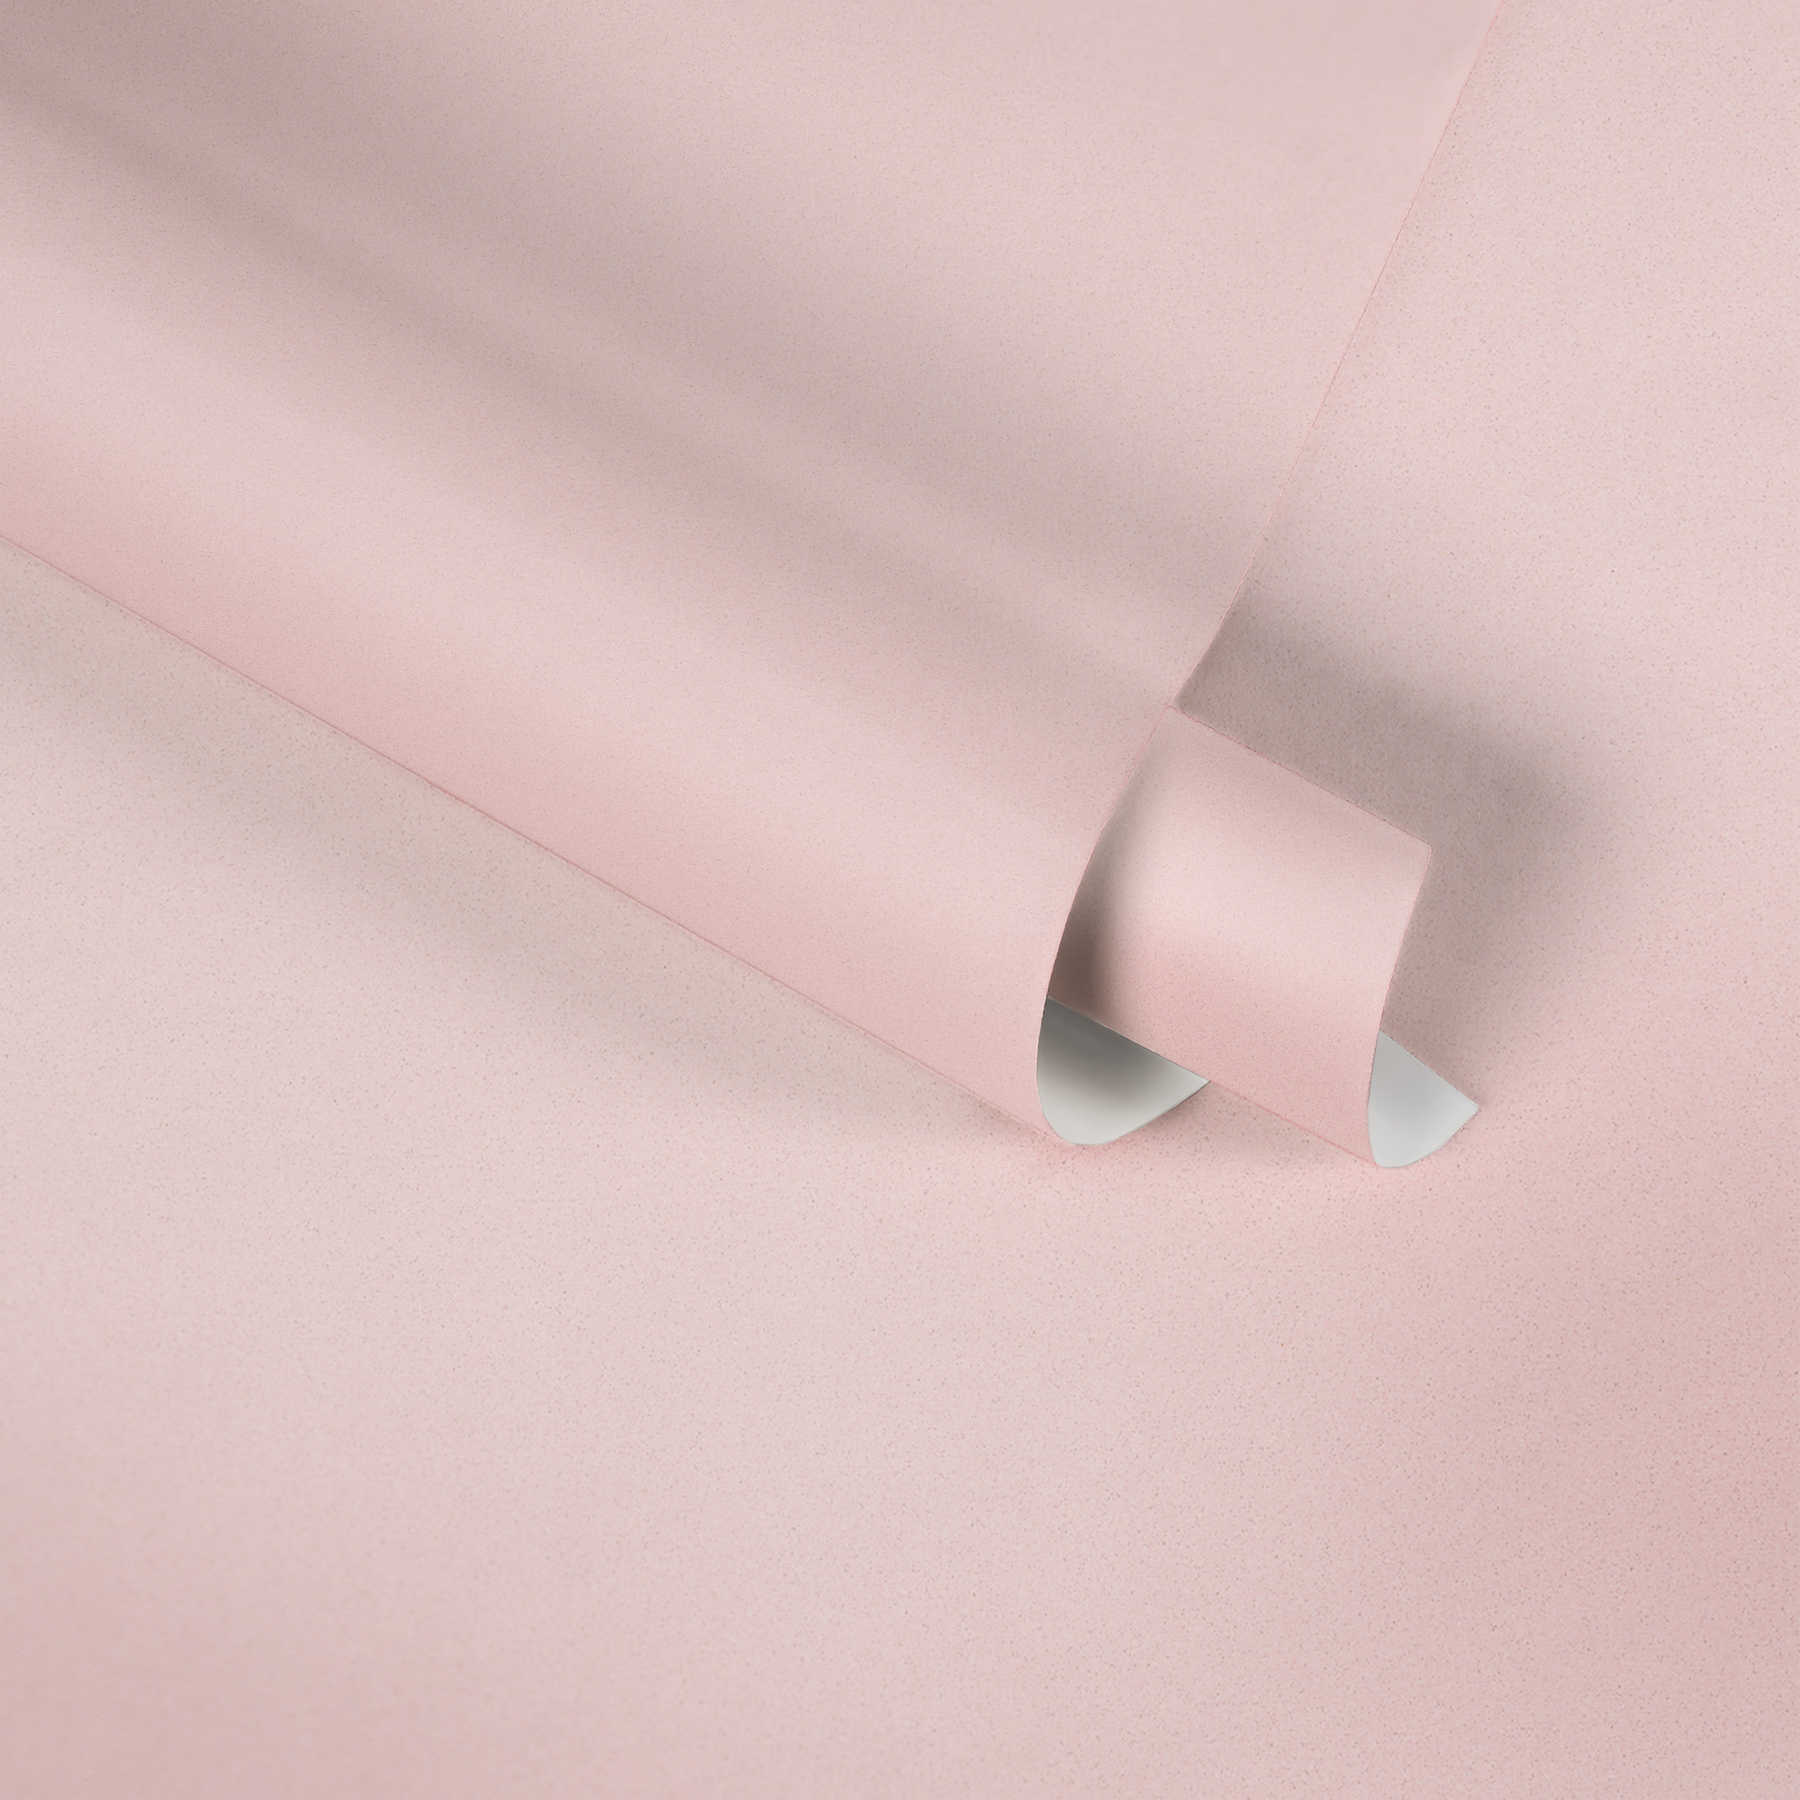             Unit behang warme kleur, structuur - roze
        